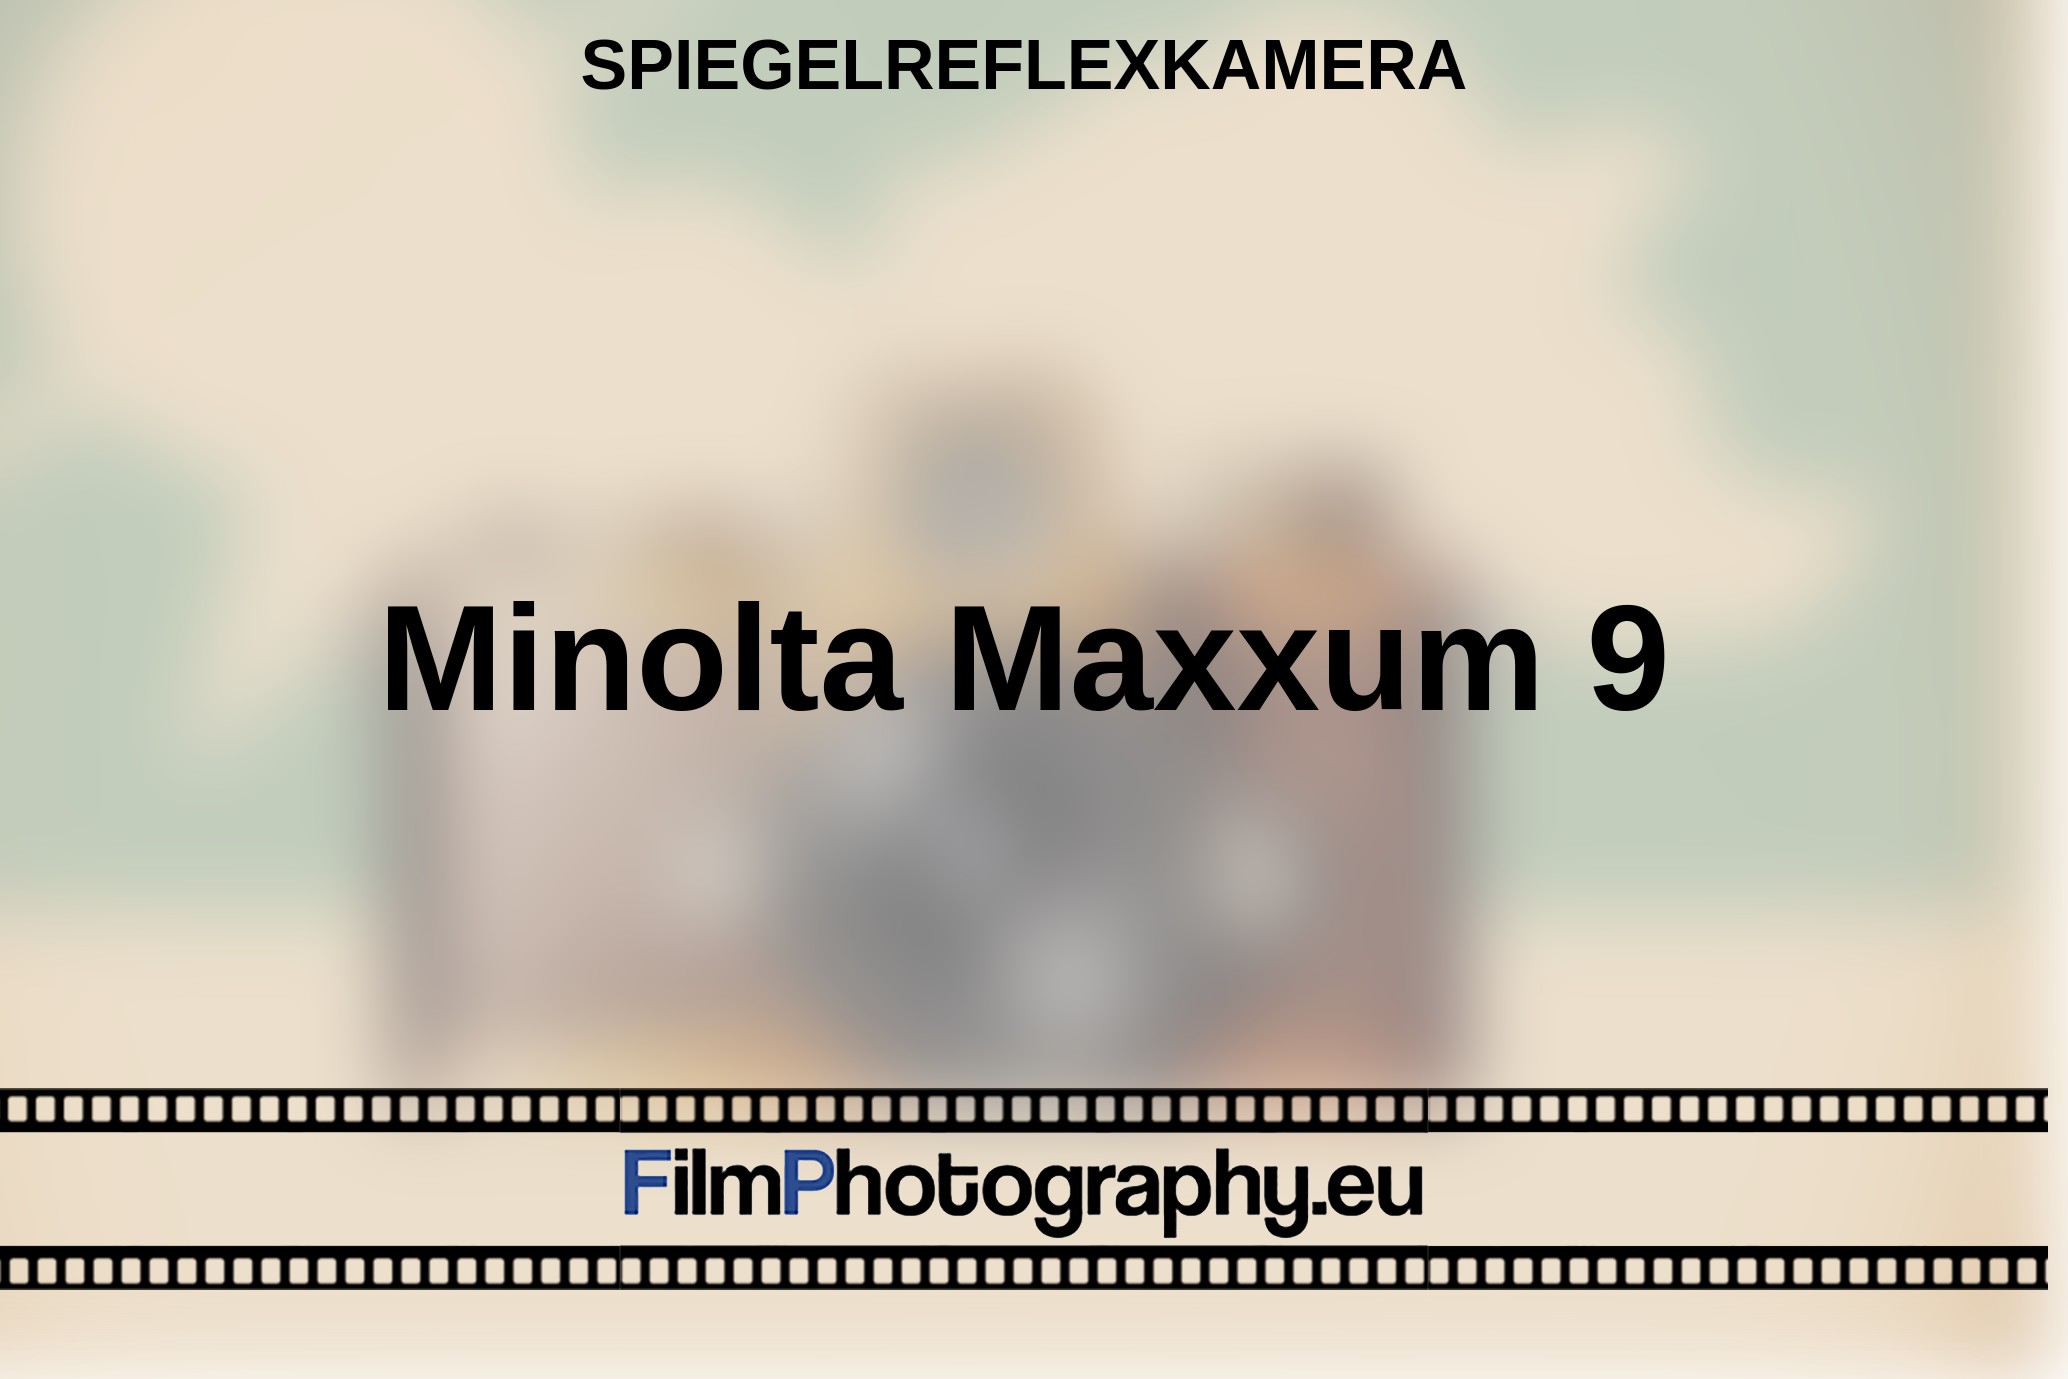 Minolta-Maxxum-9-Spiegelreflexkamera-bnv.jpg